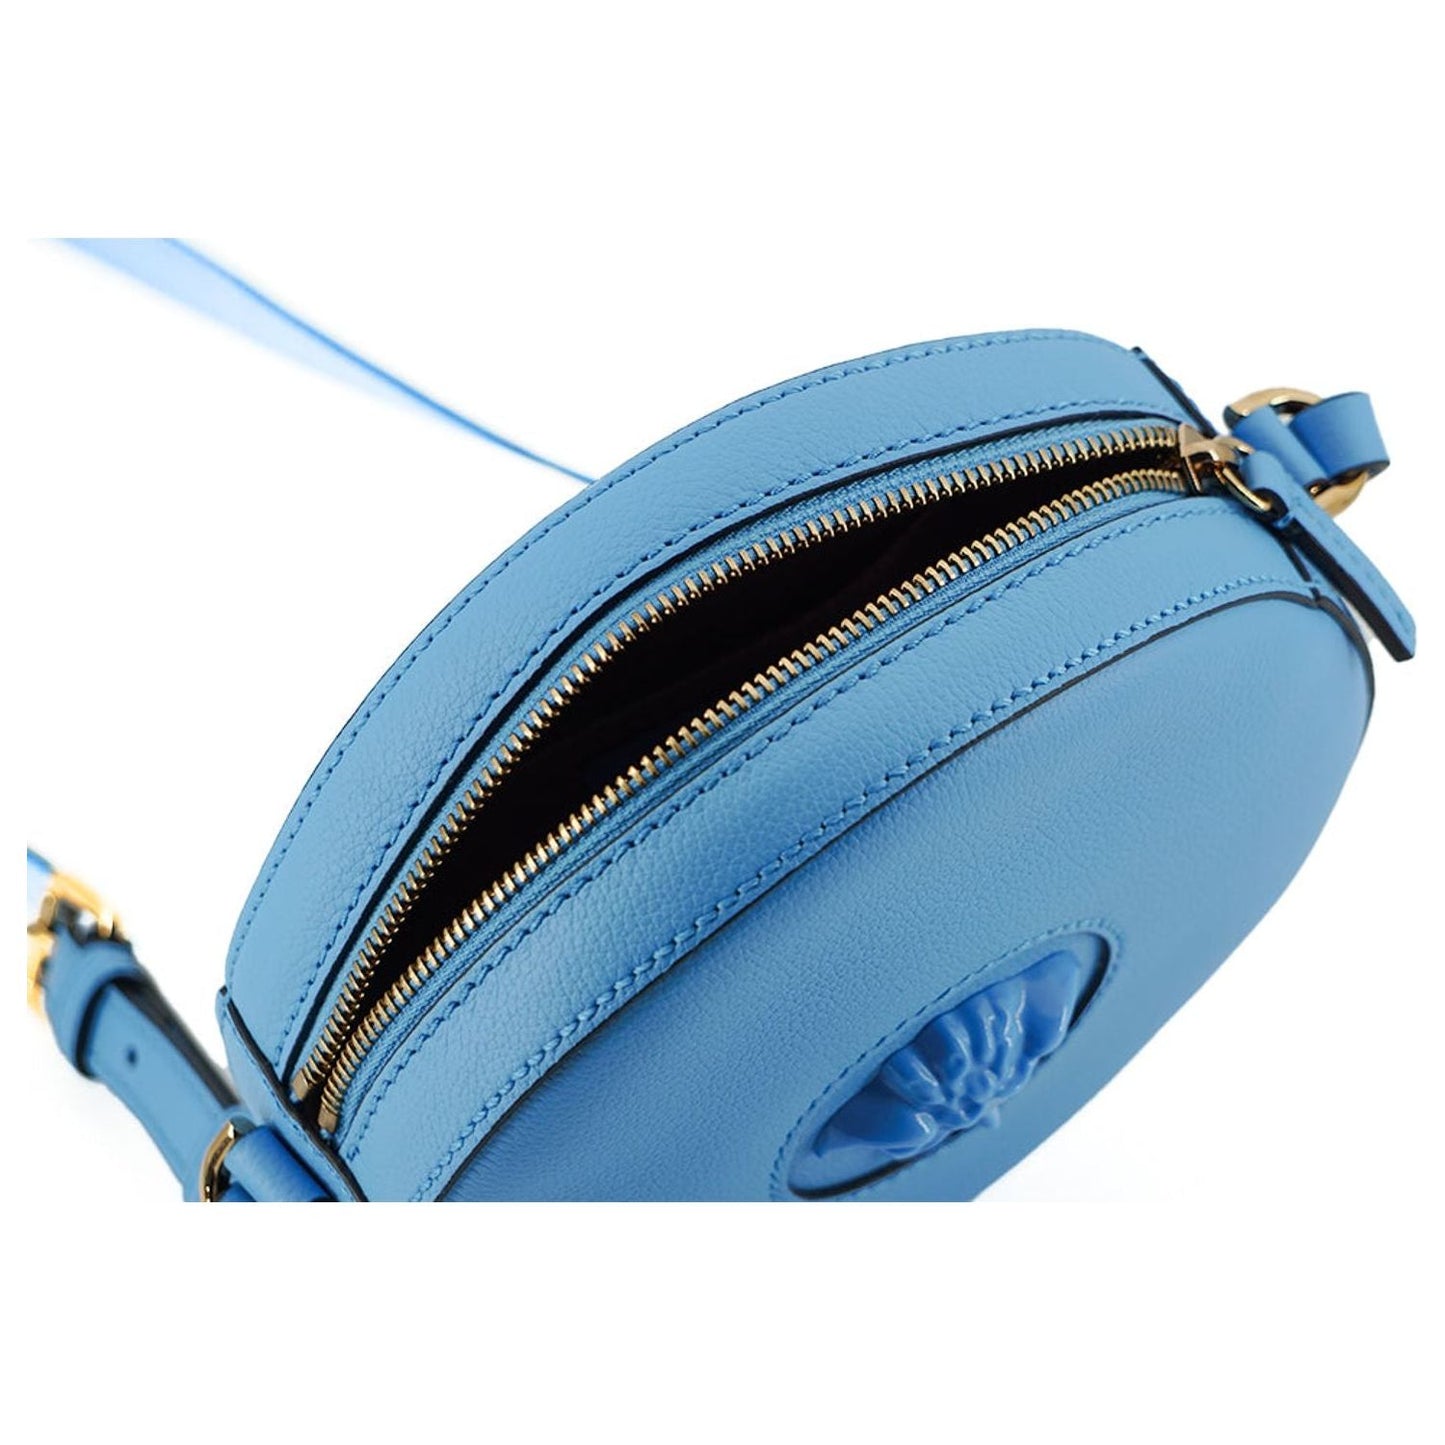 Versace Chic Blue Leather Round Shoulder Bag WOMAN SHOULDER BAGS blue-calf-leather-round-disco-shoulder-bag